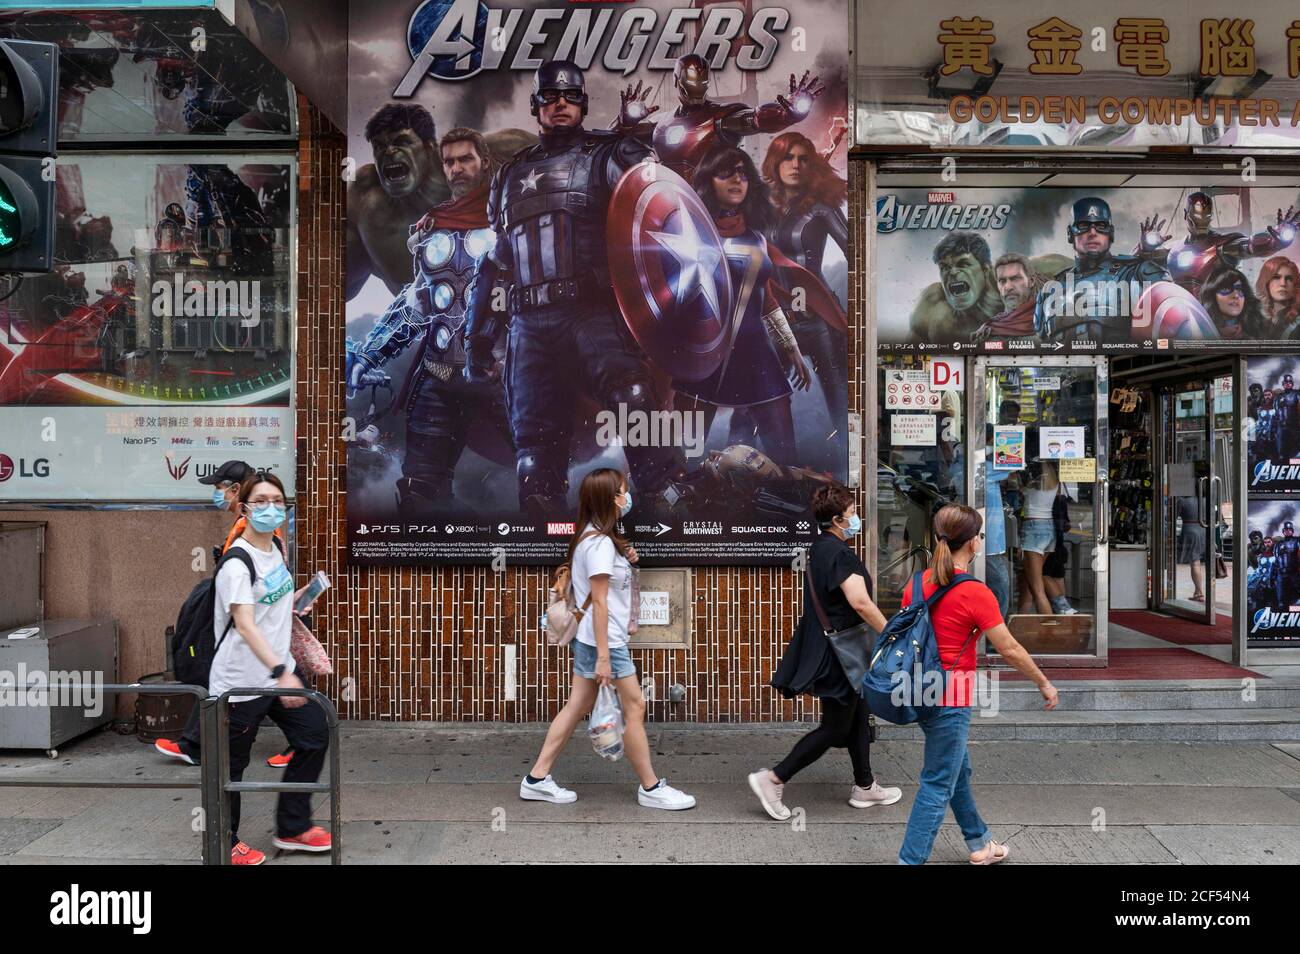 Hong Kong, Cina. 1 settembre 2020. Le persone che indossano maschere facciali camminano oltre Disney's Marvel Studio etichetta video gioco, Avengers, pubblicità visto a Hong Kong. Credit: Budrul Chukrut/SOPA Images/ZUMA Wire/Alamy Live News Foto Stock